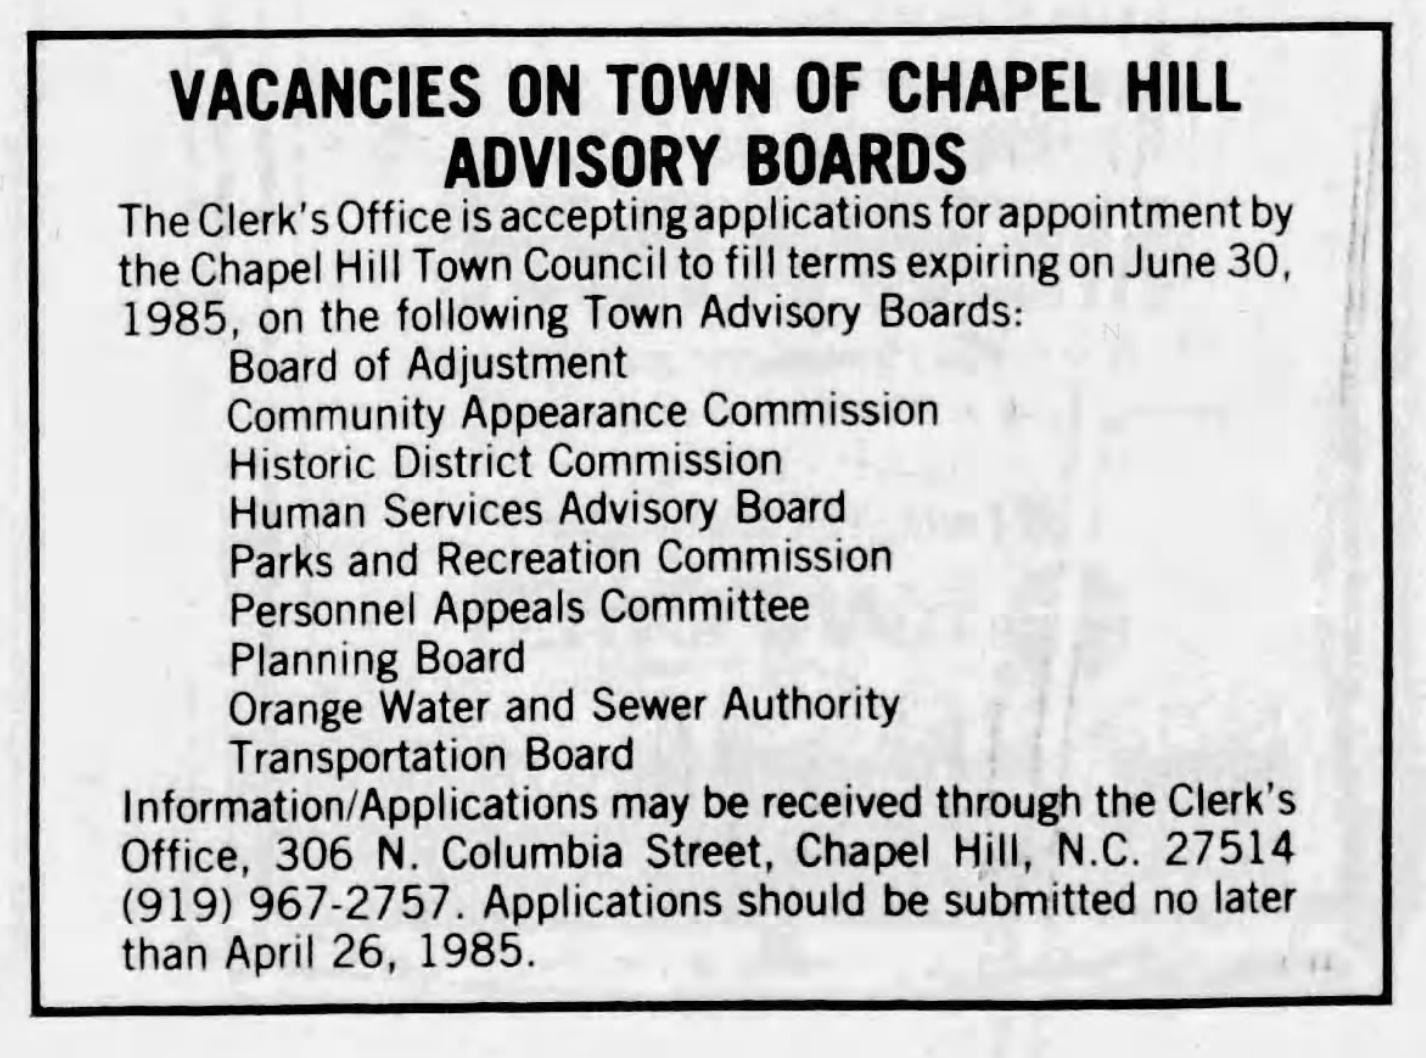 advisory-boards-in-1985